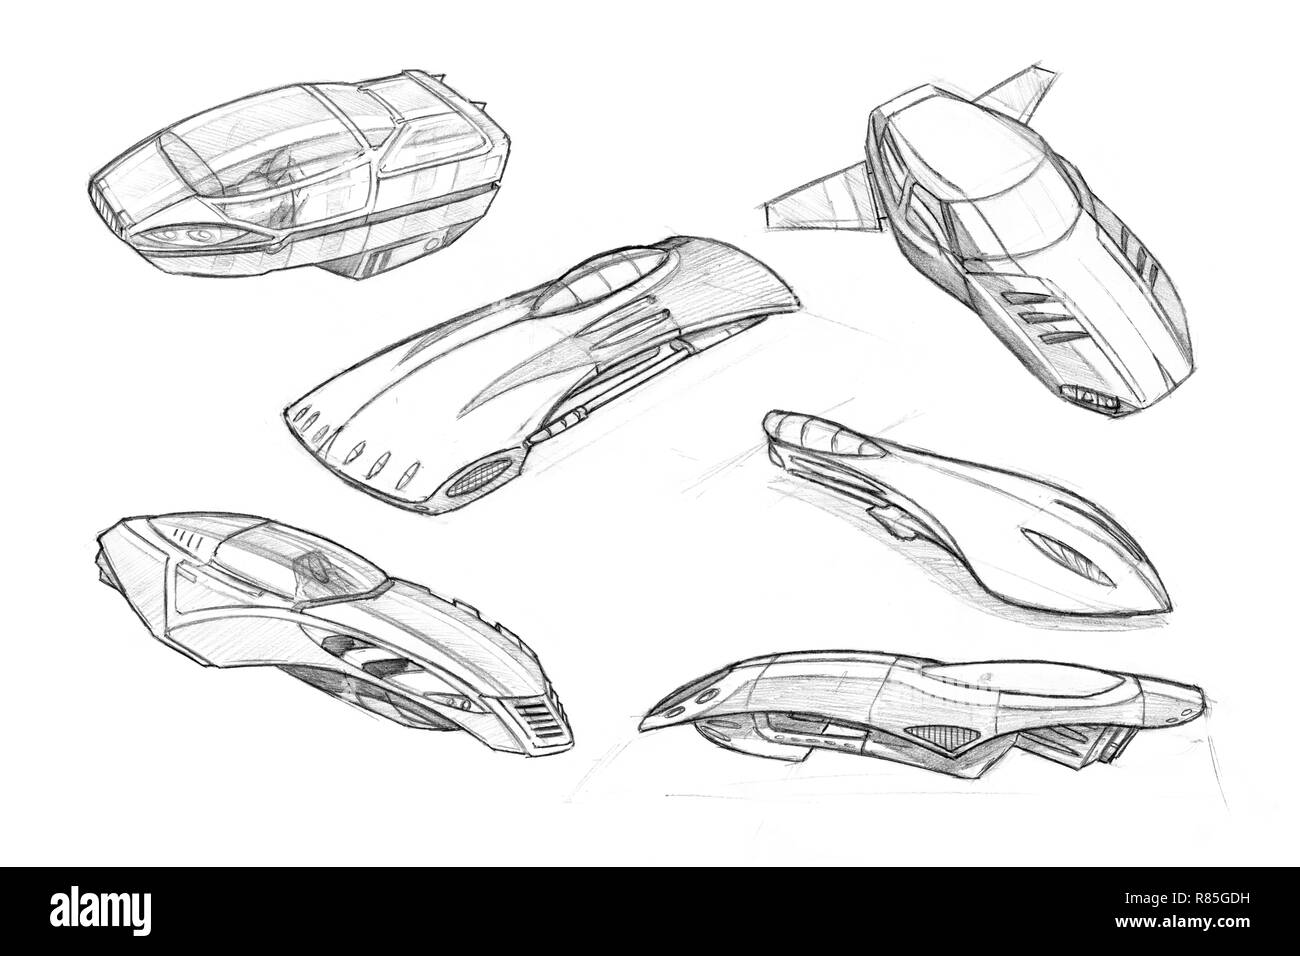 Ensemble de dessins au crayon d'art concept futuriste de Hoover ou voler des voitures ou véhicules Banque D'Images